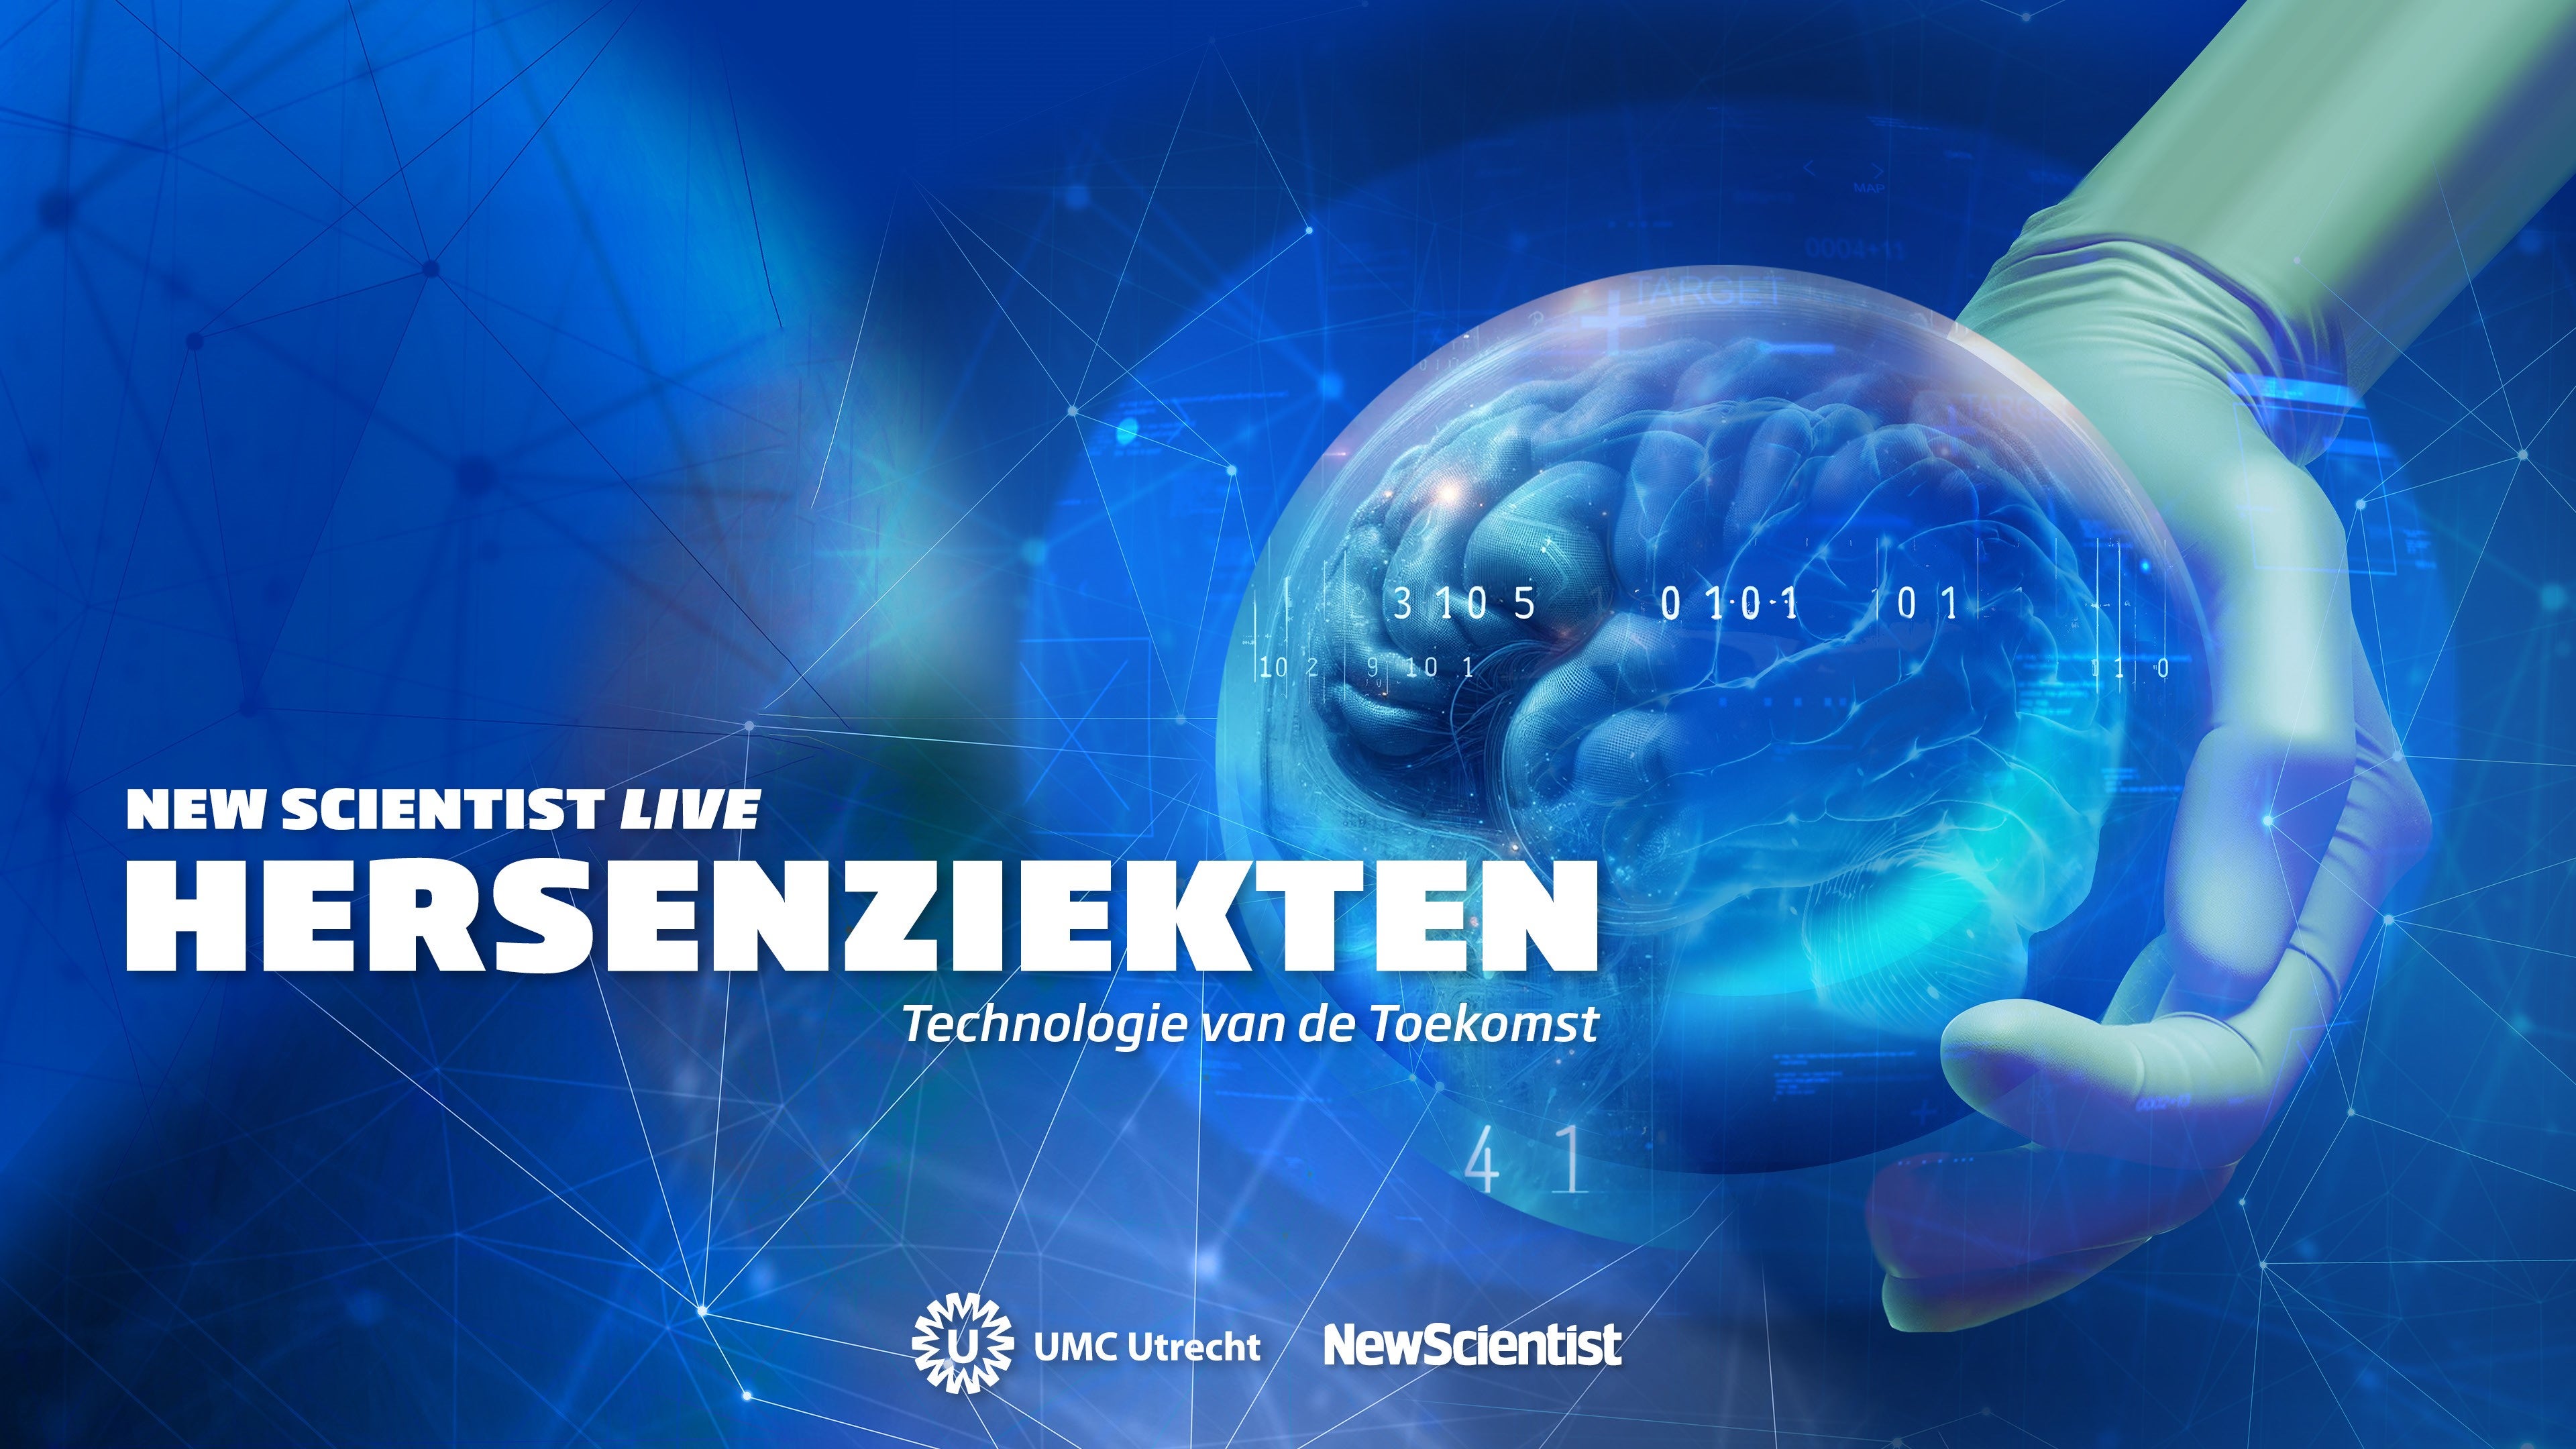 New Scientist Live Hersenziekten: technologie van de toekomst, georganiseerd door het UMC Utrecht en NewScientist vindt plaats op donderdag 13 juni in Utrecht.